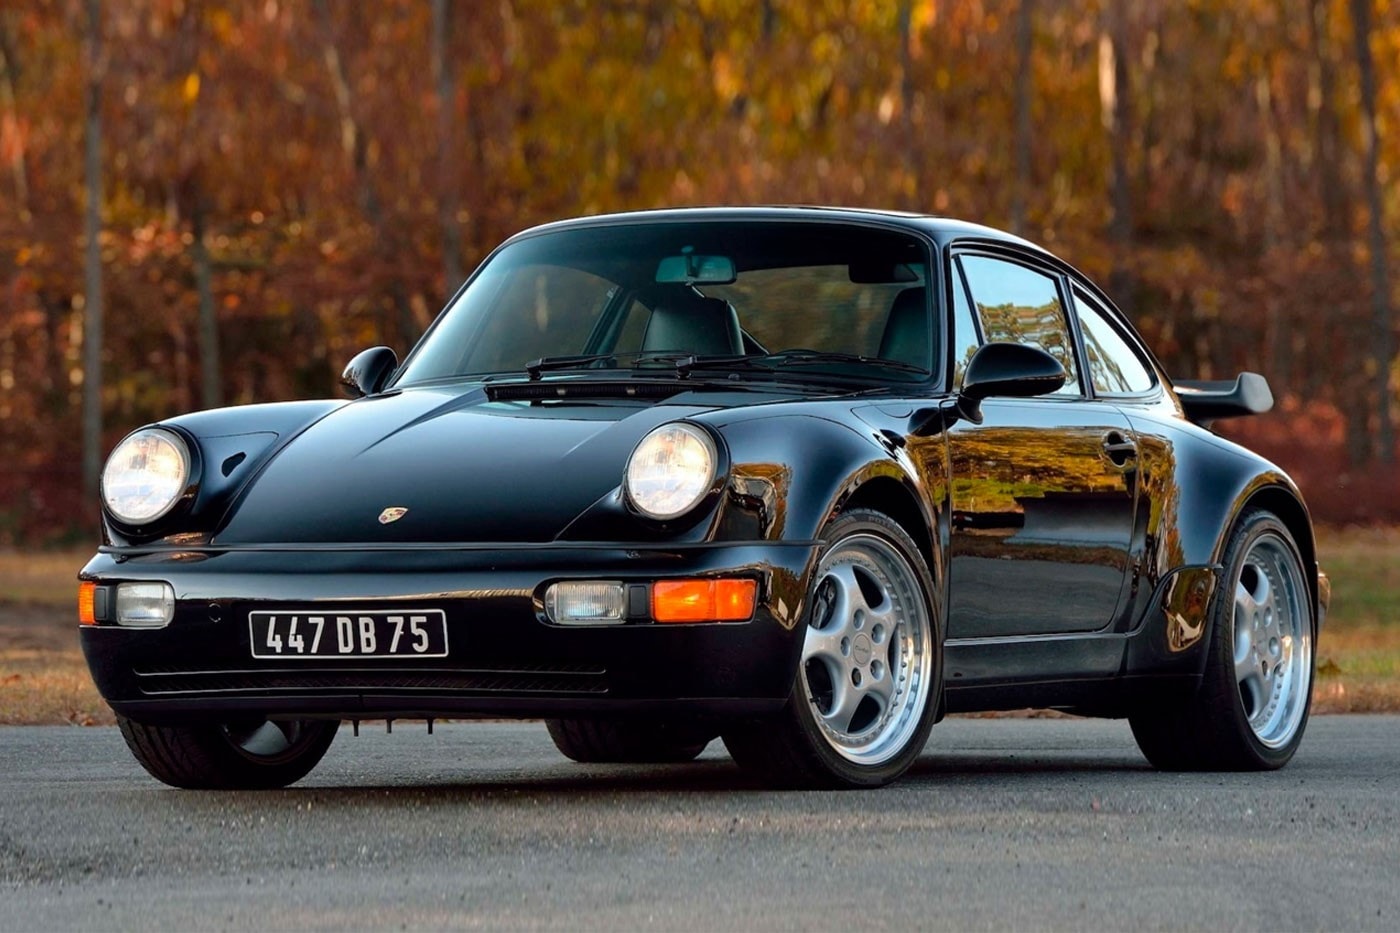 電影《Bad Boys》超經典 1994 Porsche 911 Turbo 即將展開拍賣